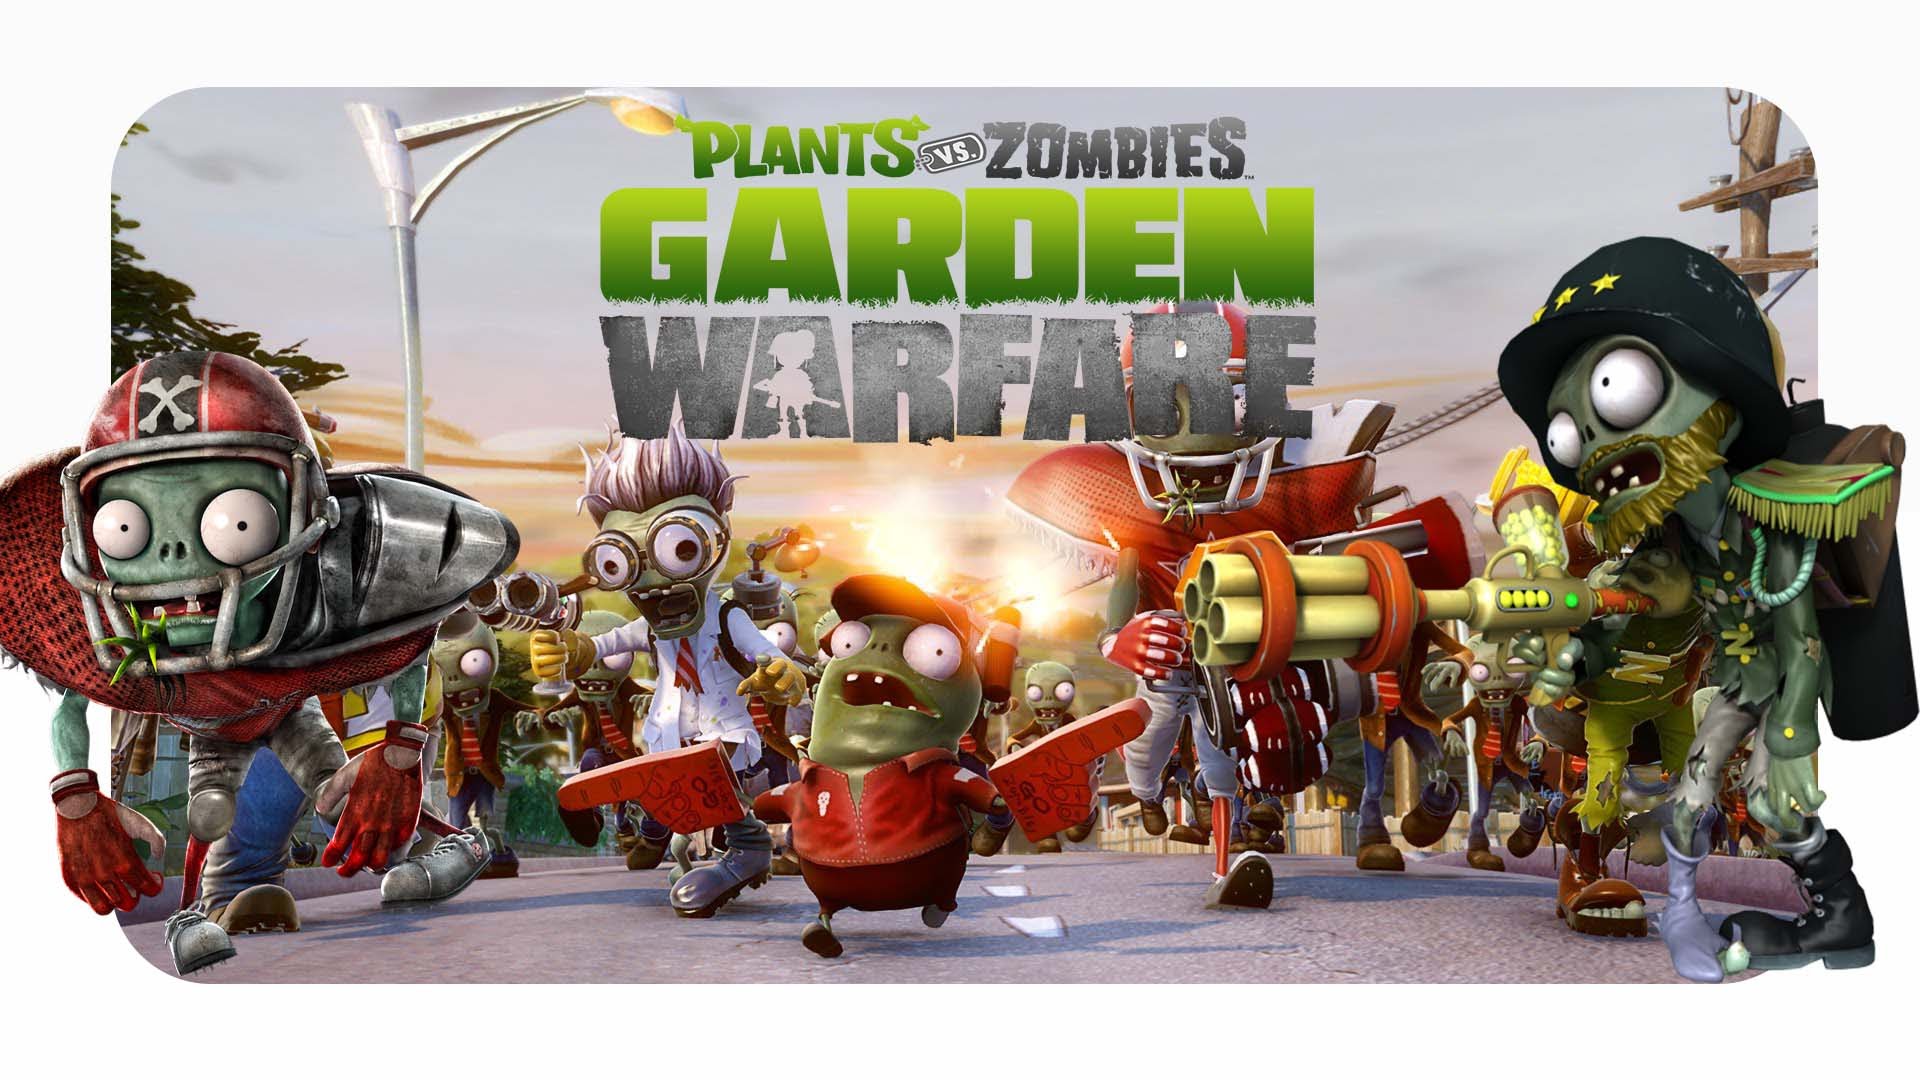 Против зомби 25. Зомби из игры Планета зомби. PVZ gw3. Plants vs. Zombies. Plants vs Zombies зомби.